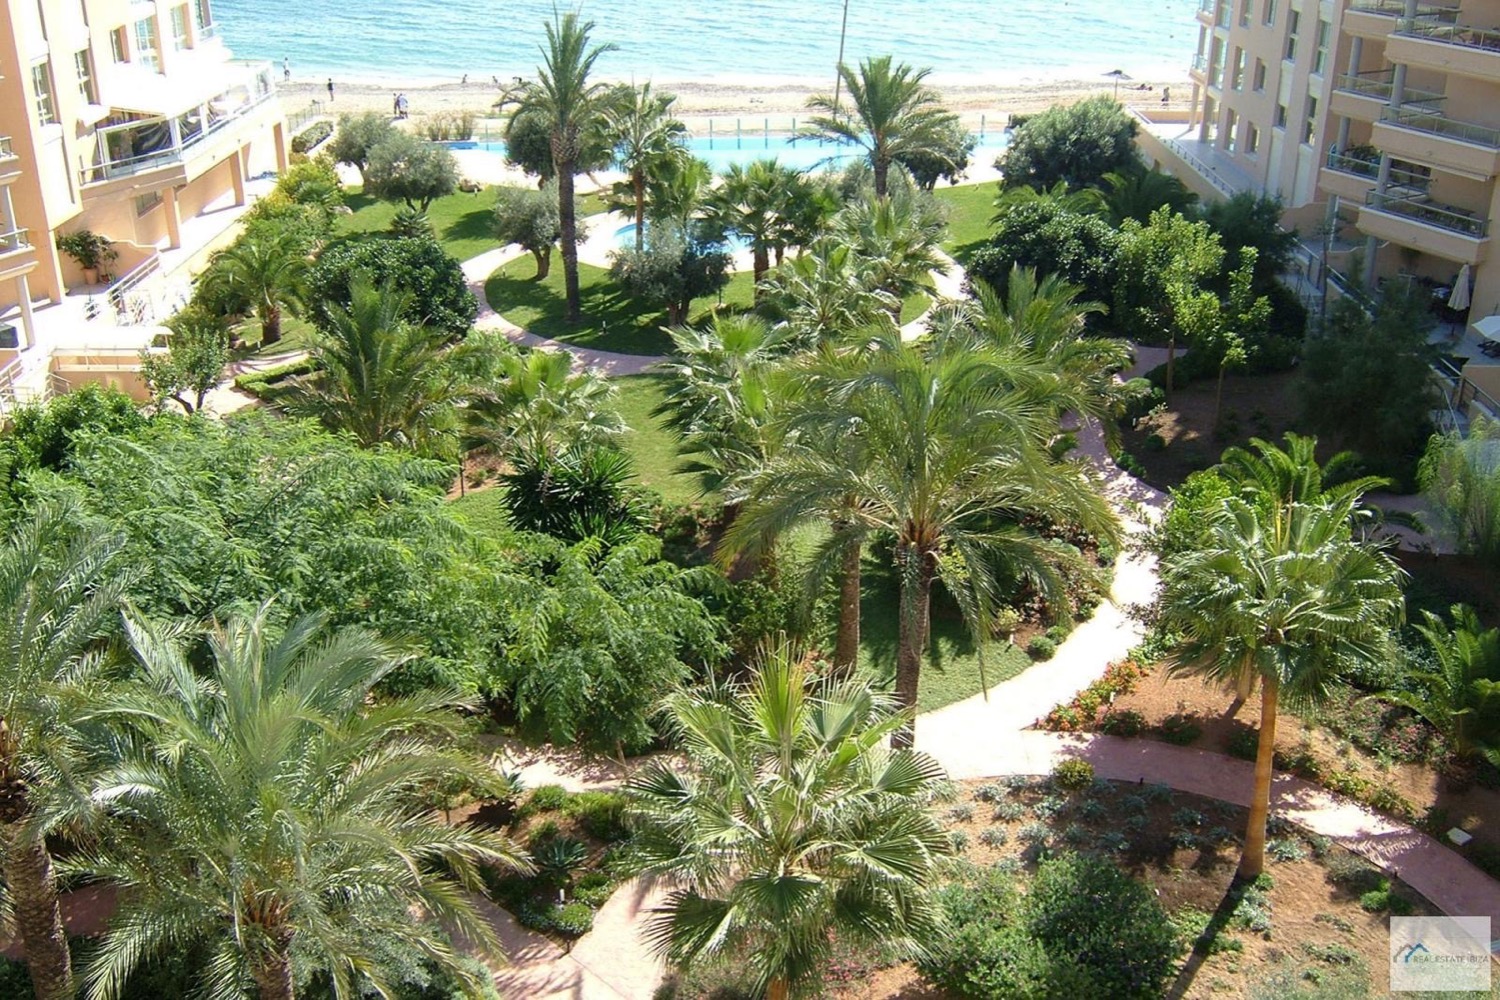 Smuk penthouse med fantastisk havudsigt i Playa d'en Bossa